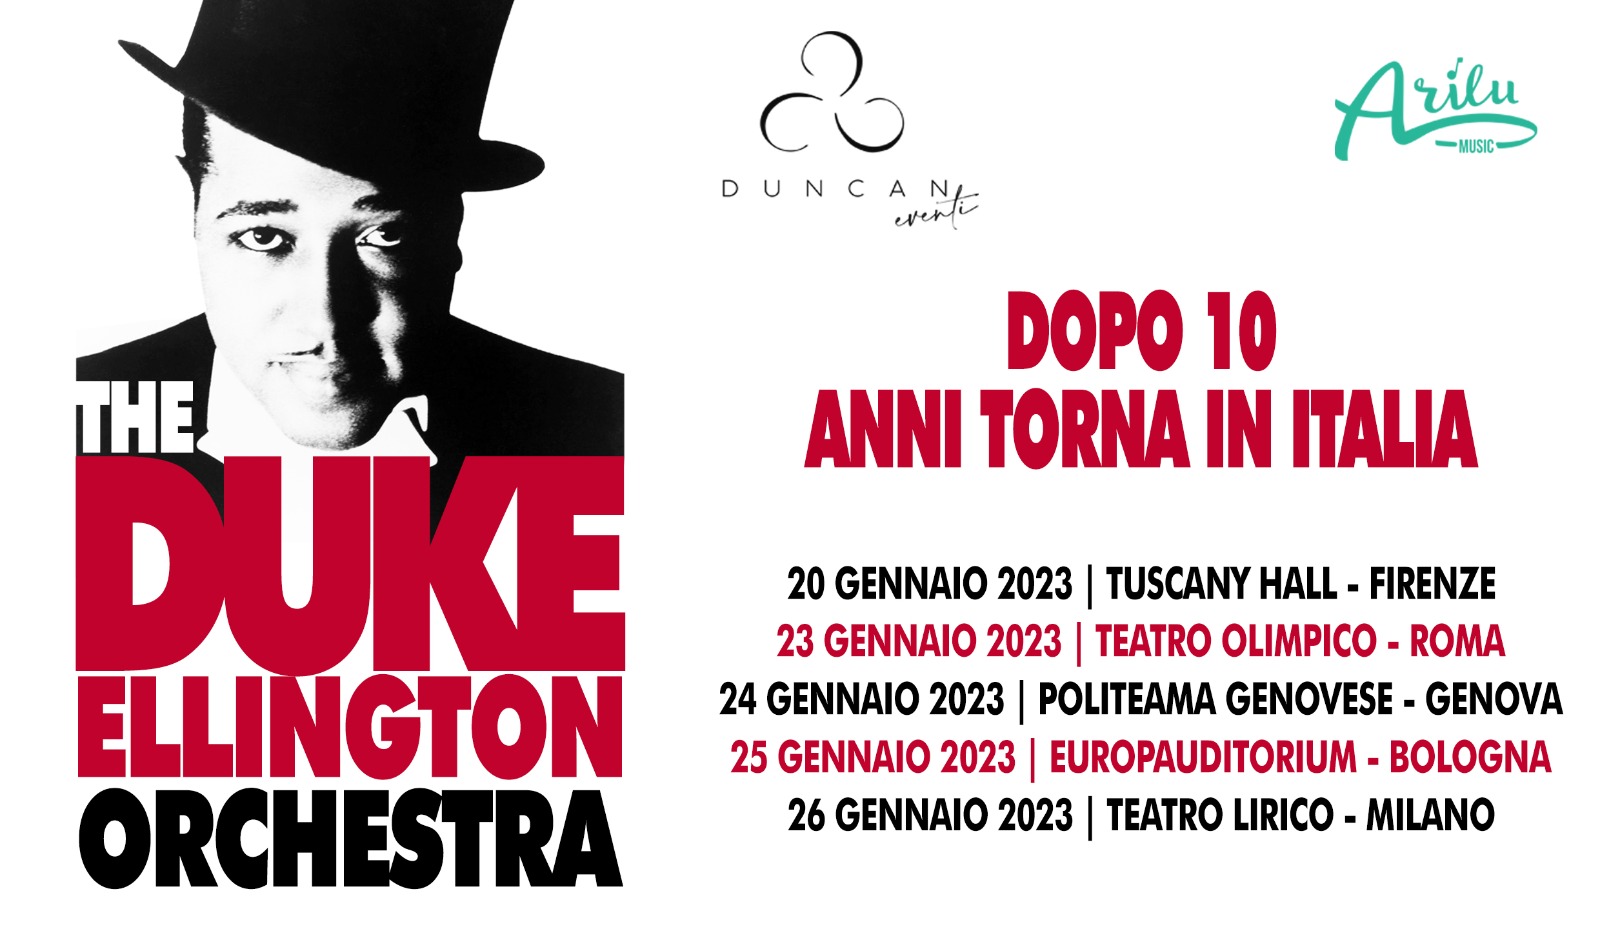 La storica DUKE ELLINGTON ORCHESTRA torna per la seconda volta in tour in Italia a gennaio 2023! Prevendite disponibili